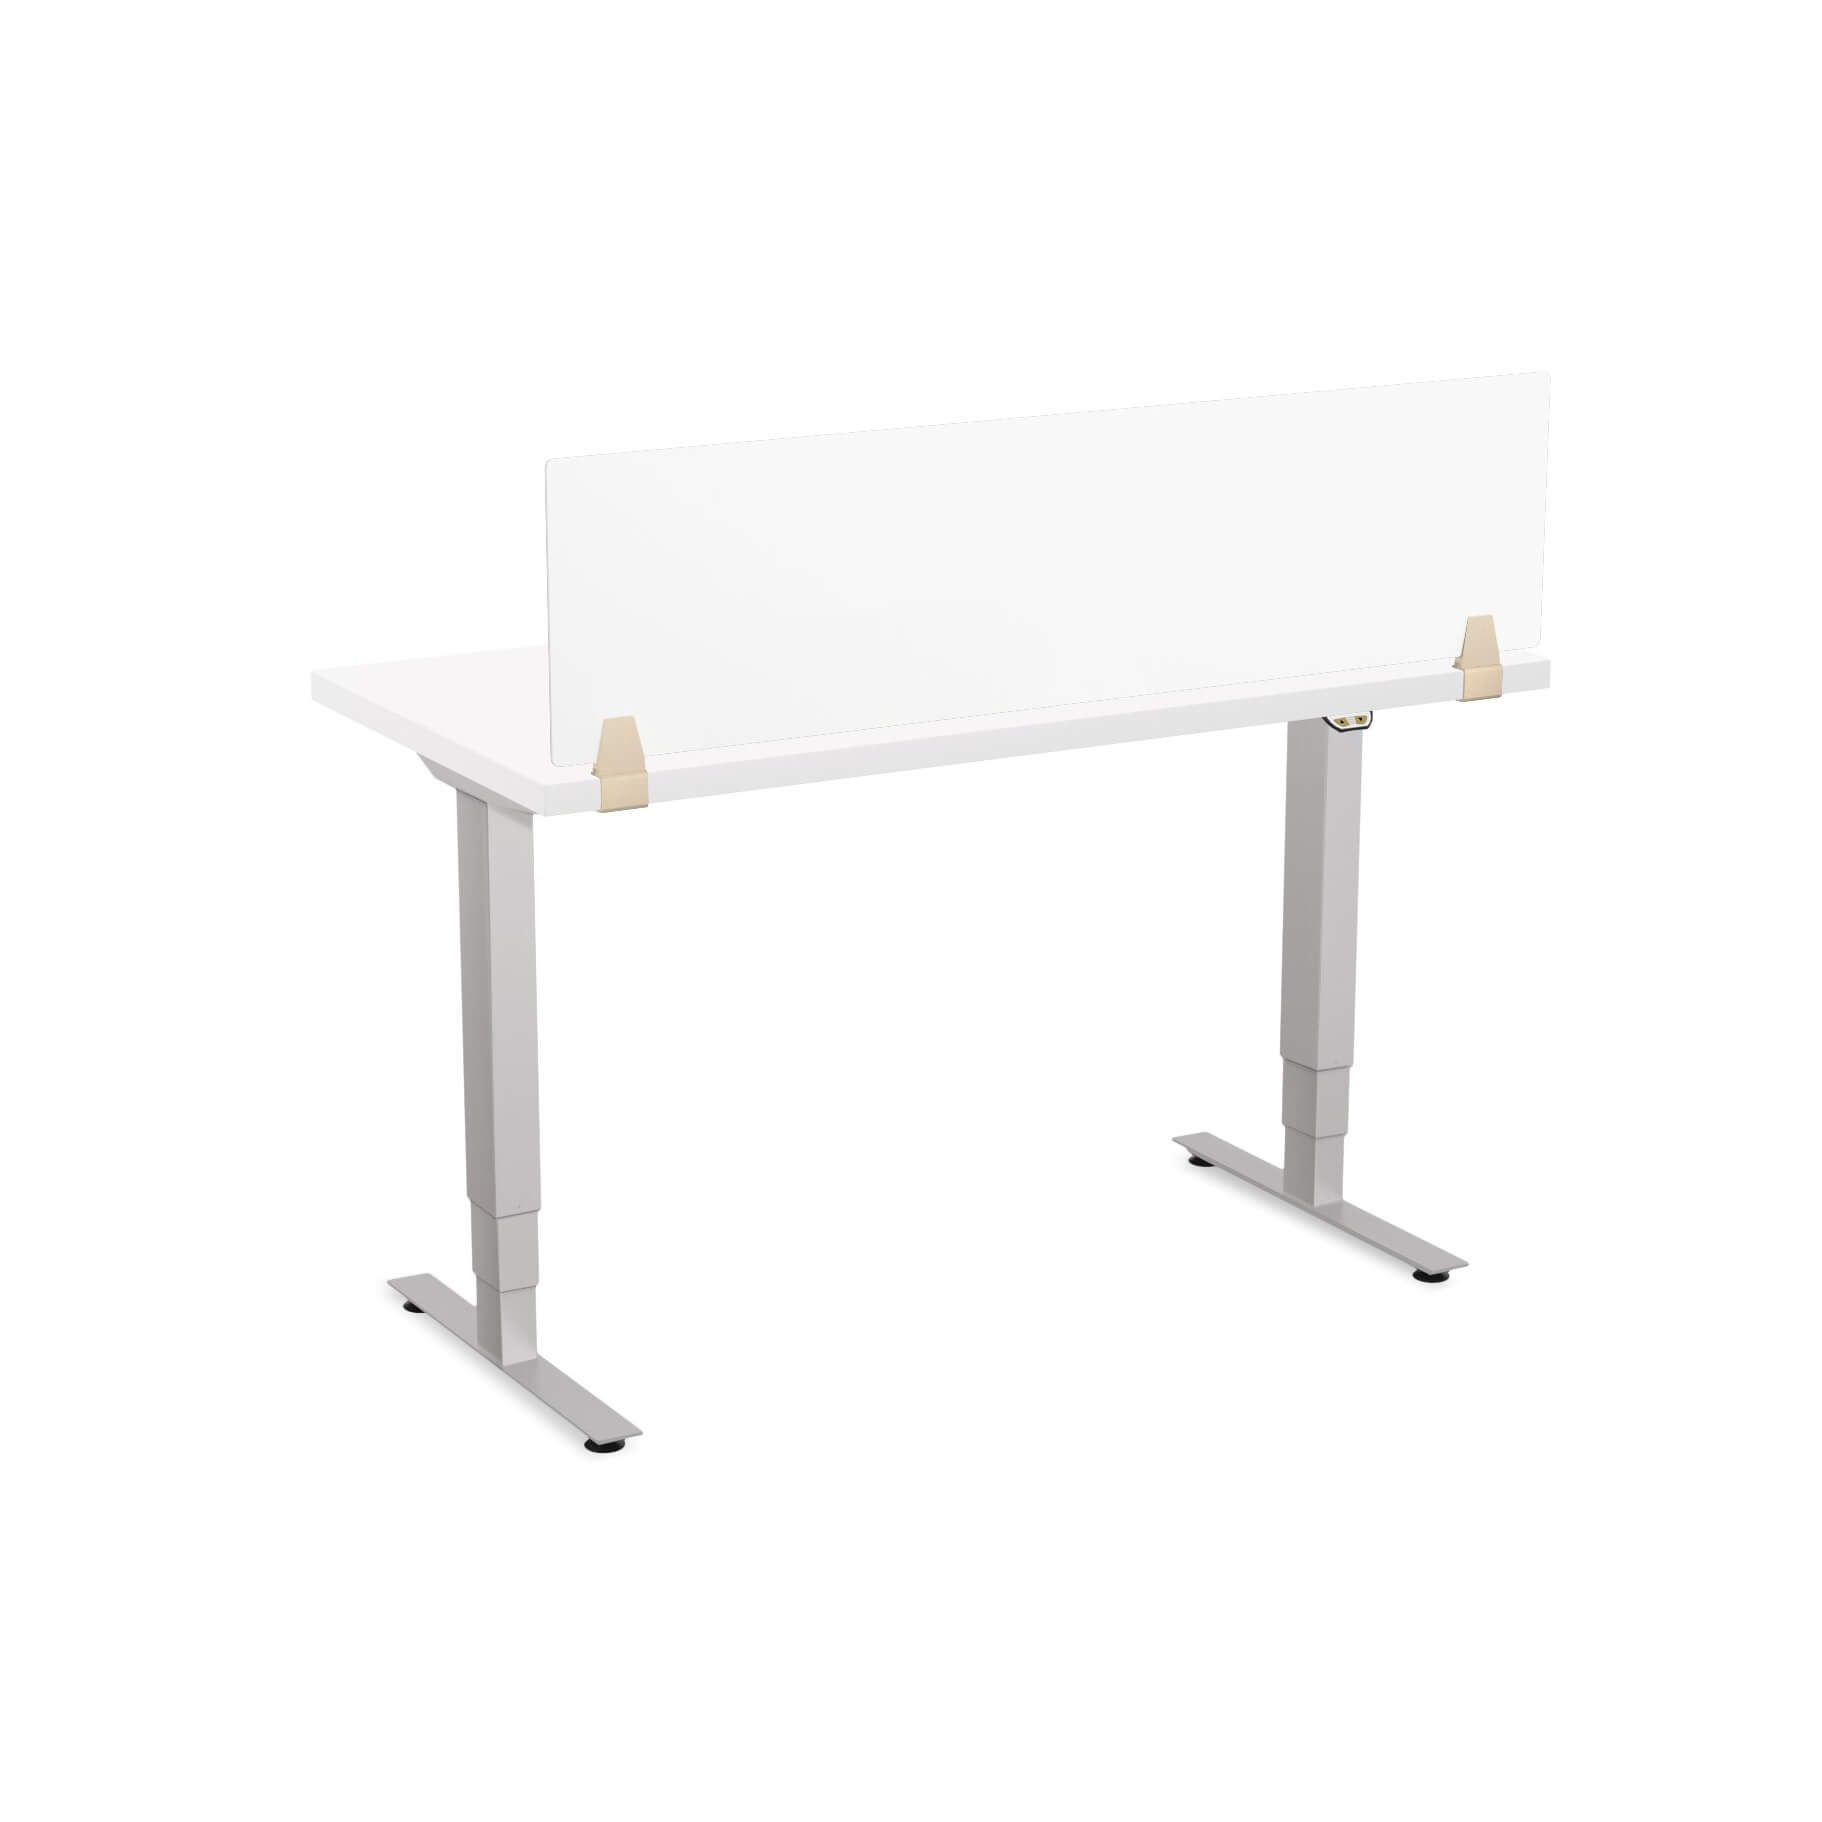 Sit stand desk adjustable CUB 1D PATR 2448 WH PS EPS